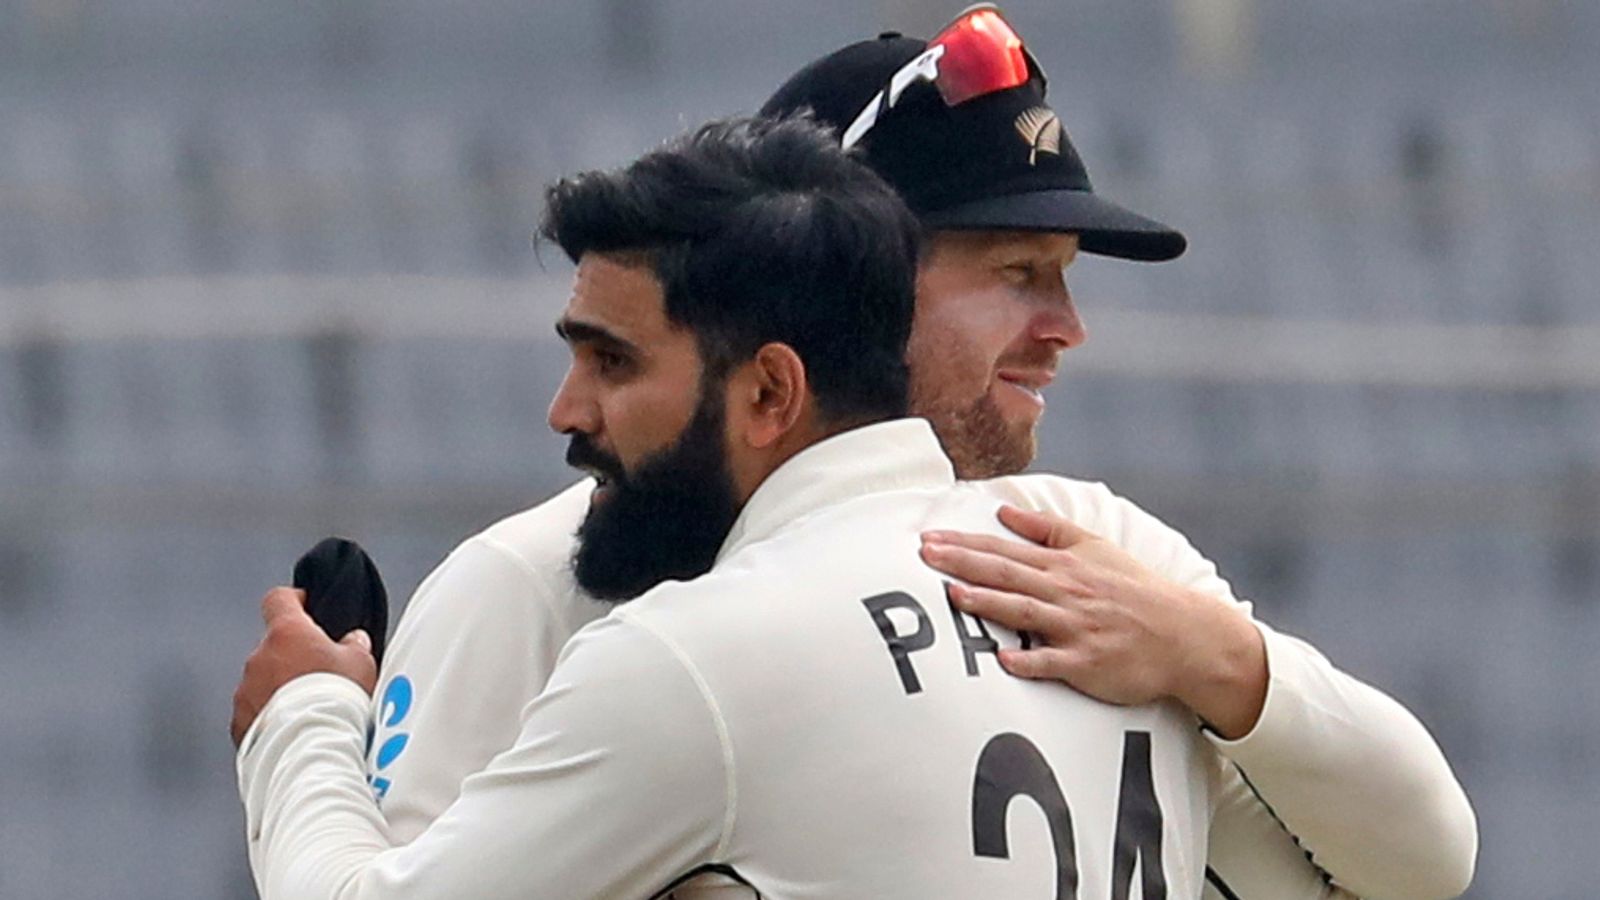 Ajaz Patel de Nueva Zelanda toma seis terrenos para preparar la victoria en la prueba sobre Bangladesh y la serie cuadrada |  Noticias de críquet